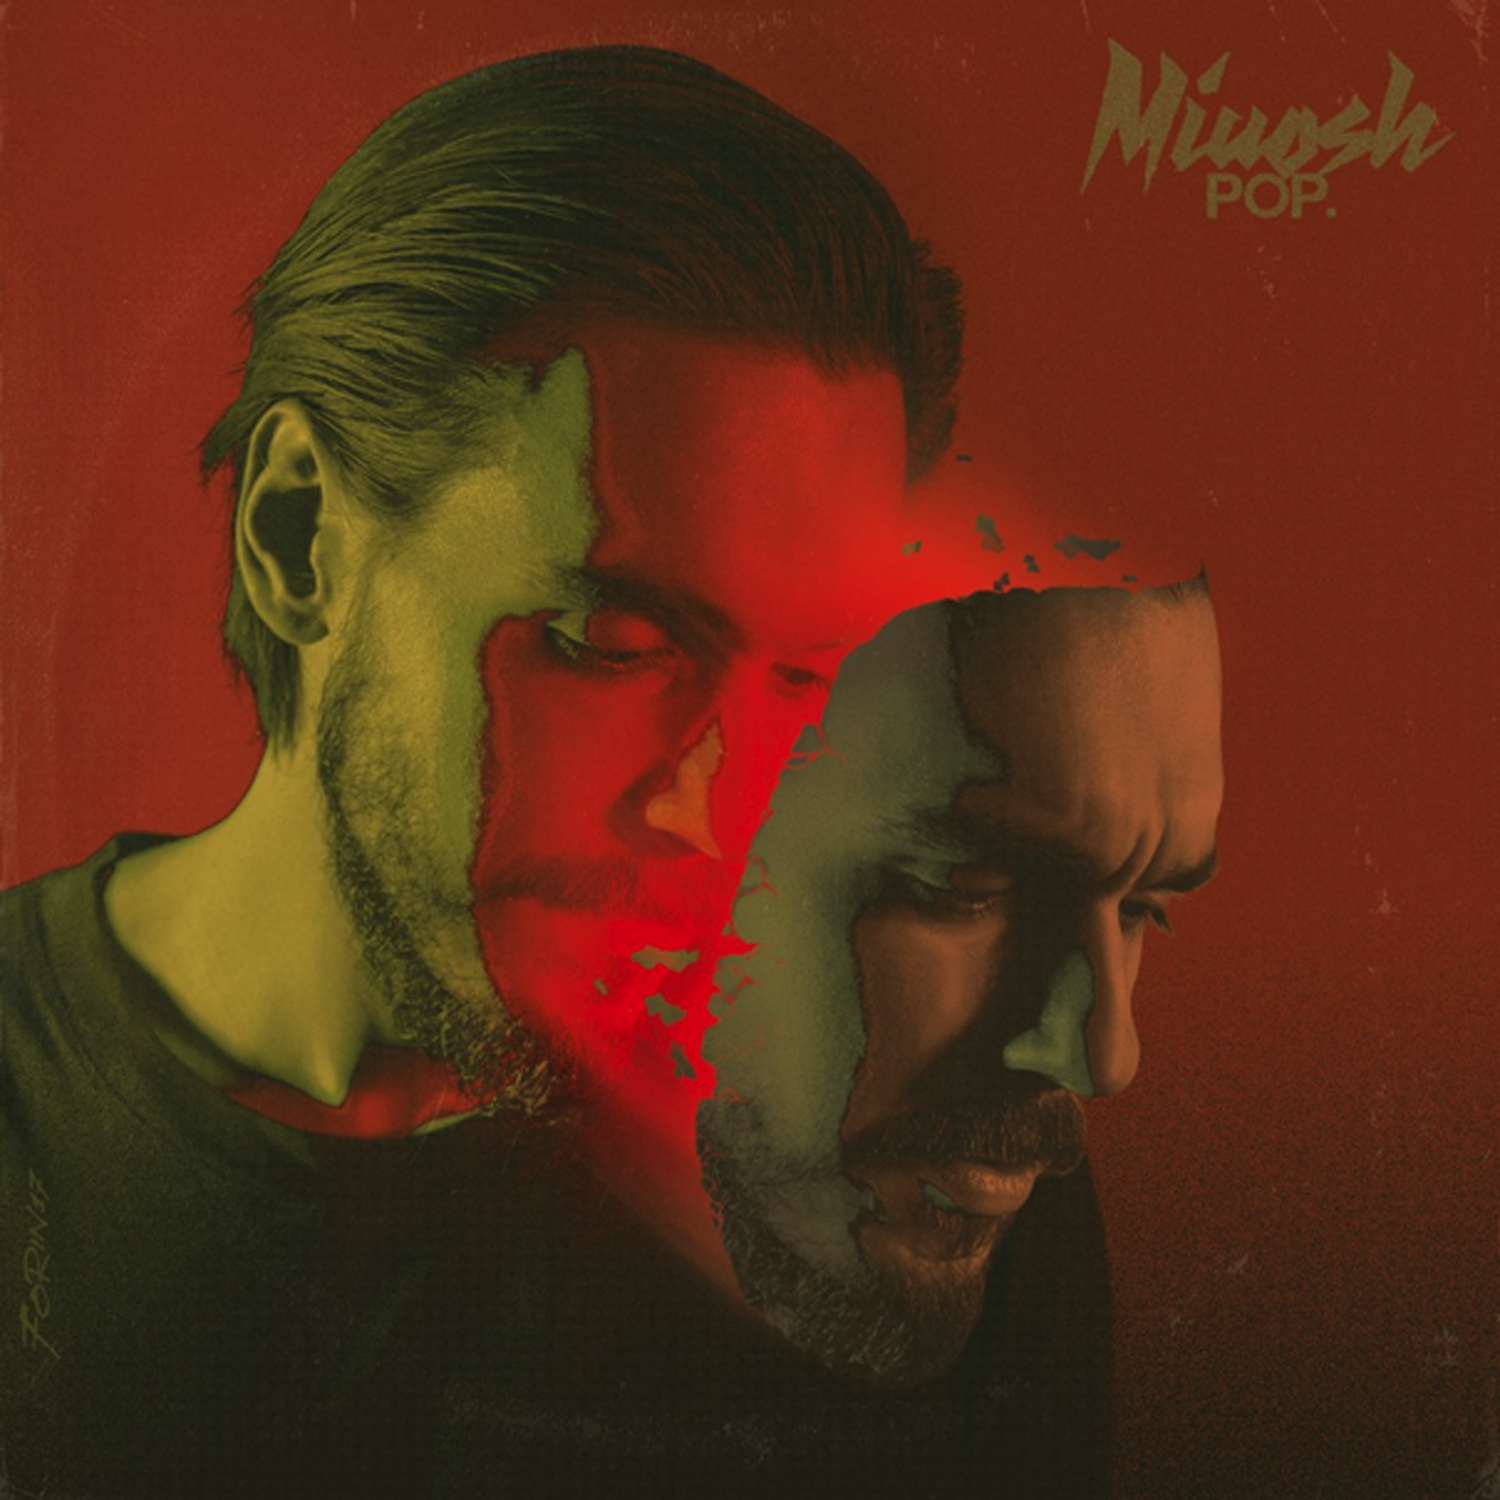 Nowy album Miuosha - Pop już w sprzedaży! 